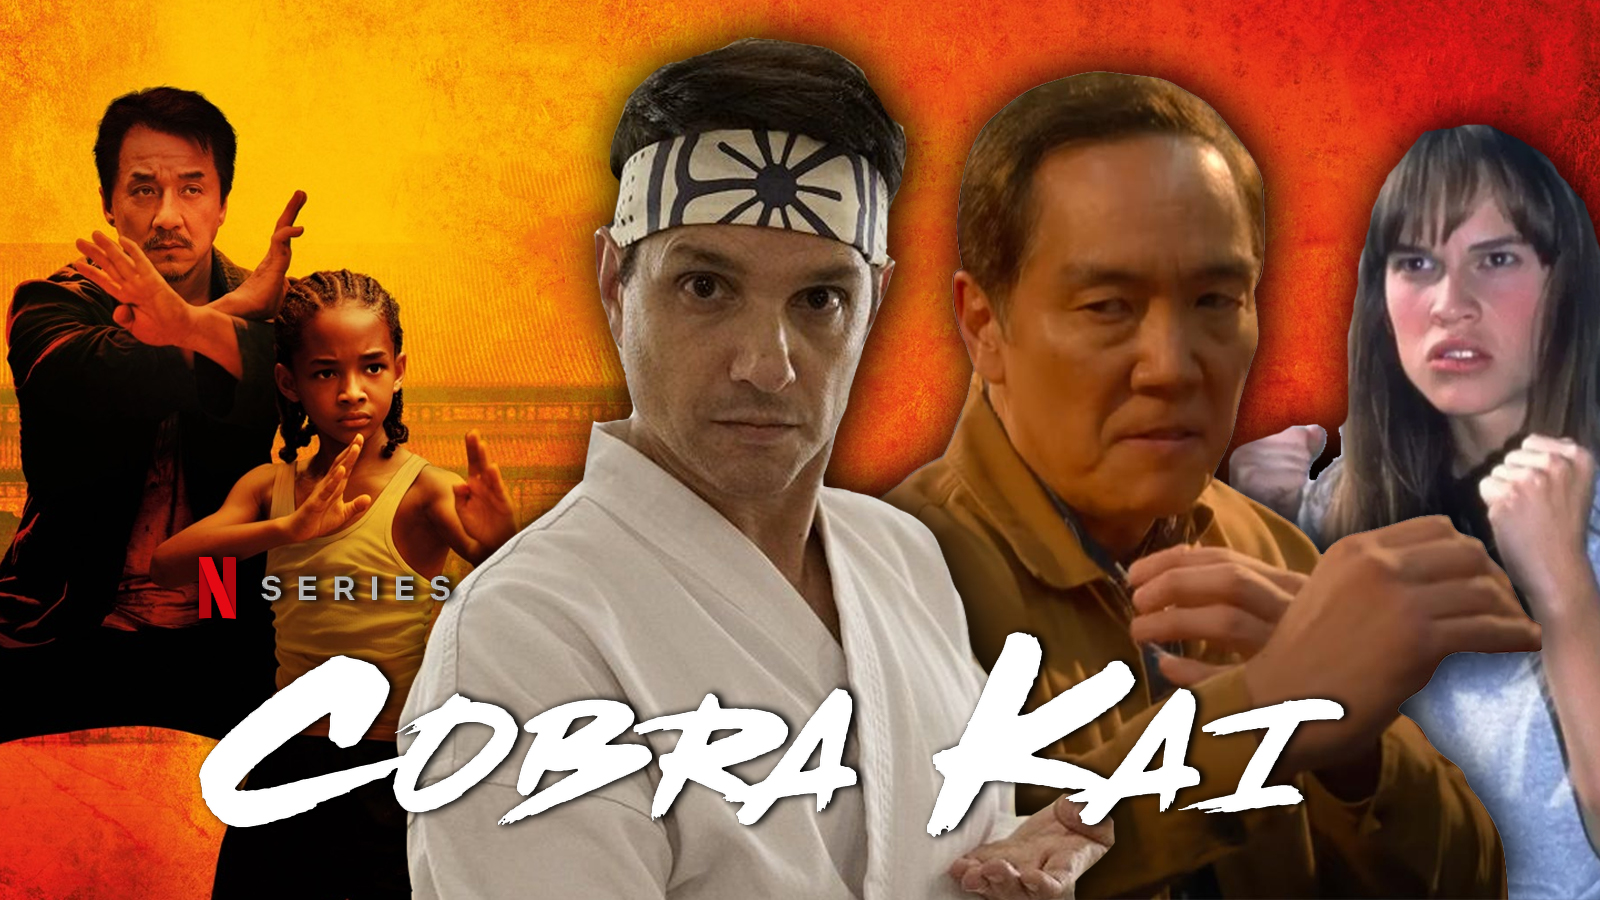 Cobra Kai moves to Netflix for season 3